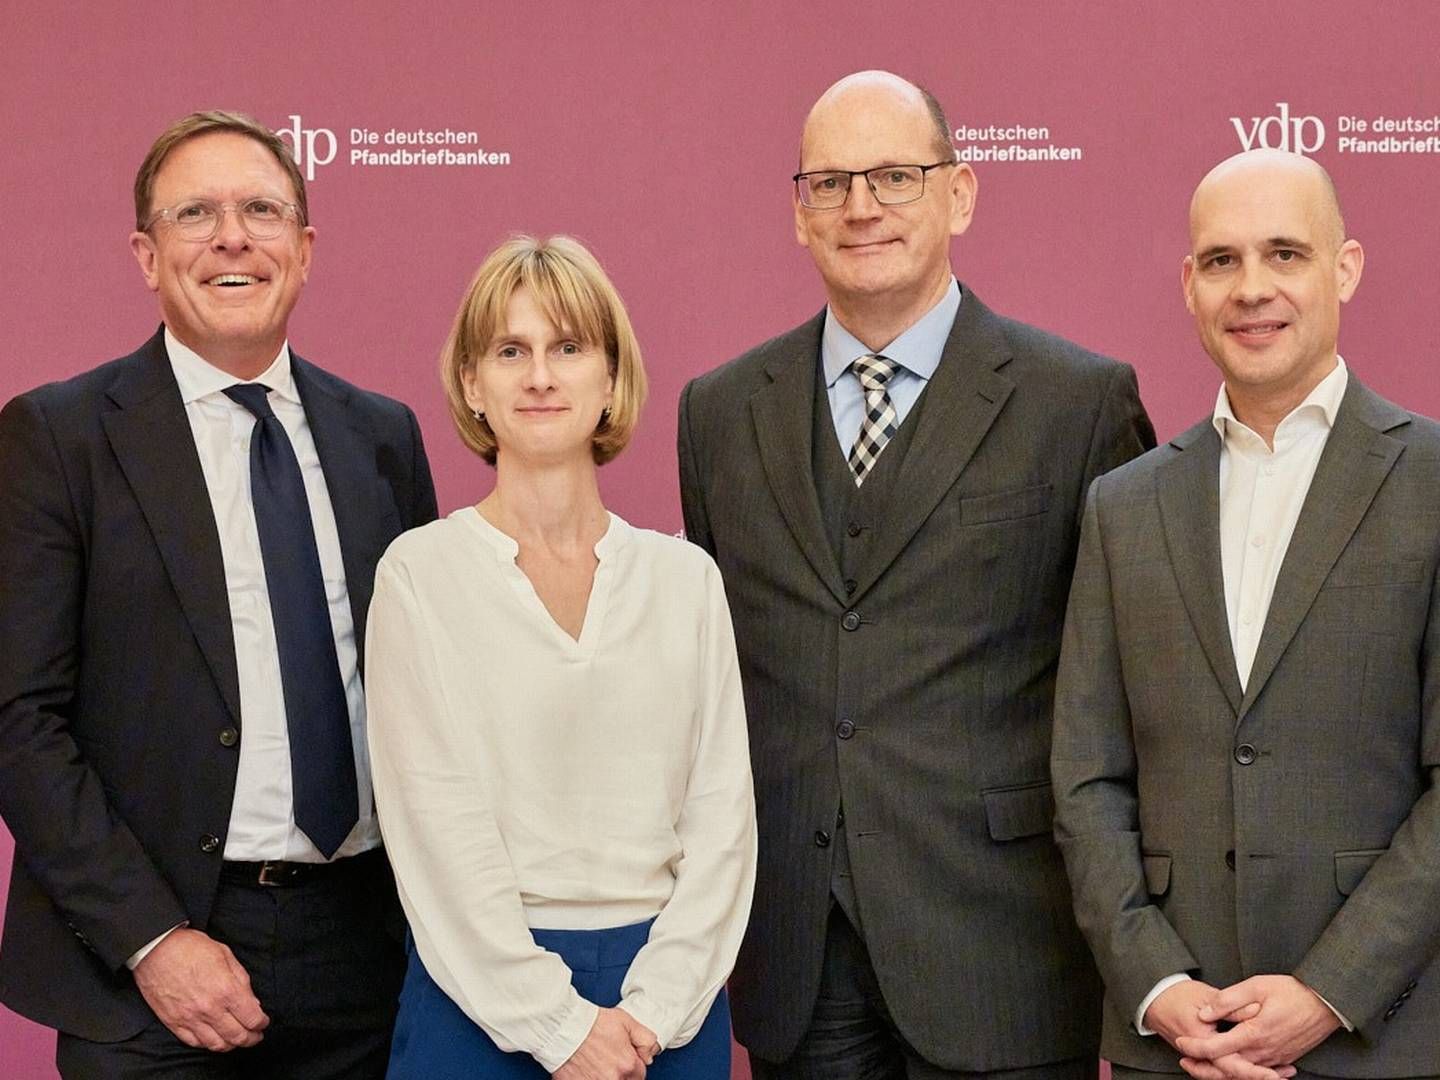 Die neue Führungsspitze des VDP: Jens Tolckmitt, Annett Wünsche, Tim Lassen und Sascha Kullig (von links). | Foto: Vdp